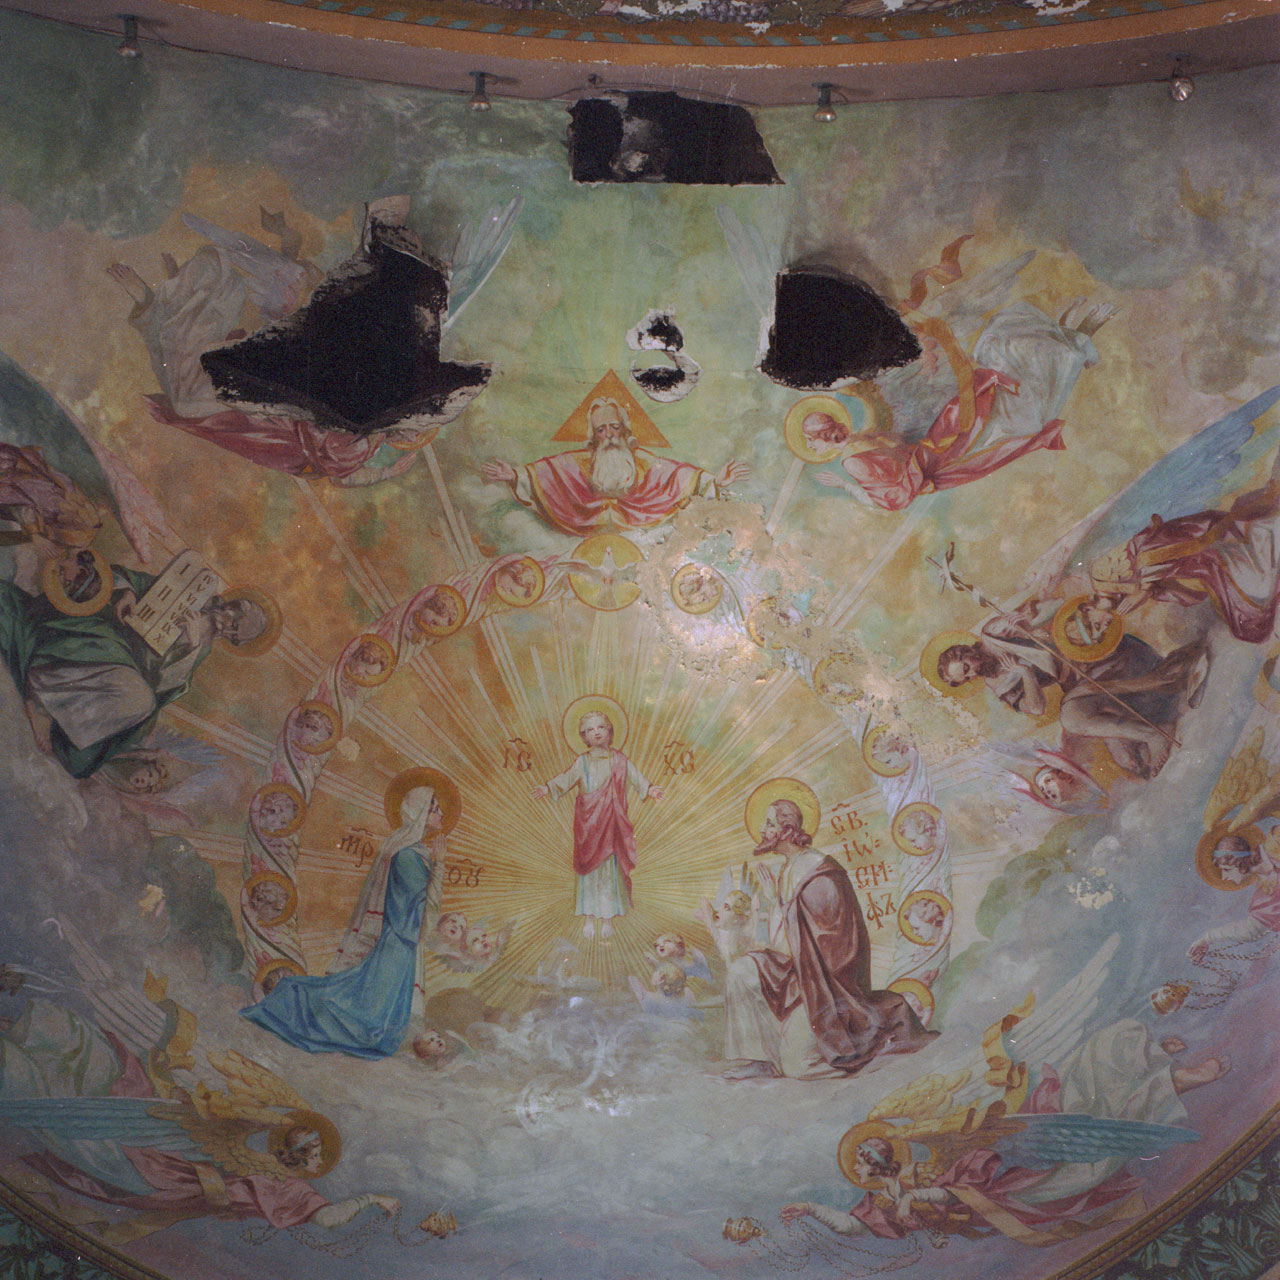 st-joeseph-byzatine--christ-ceiling-fresco